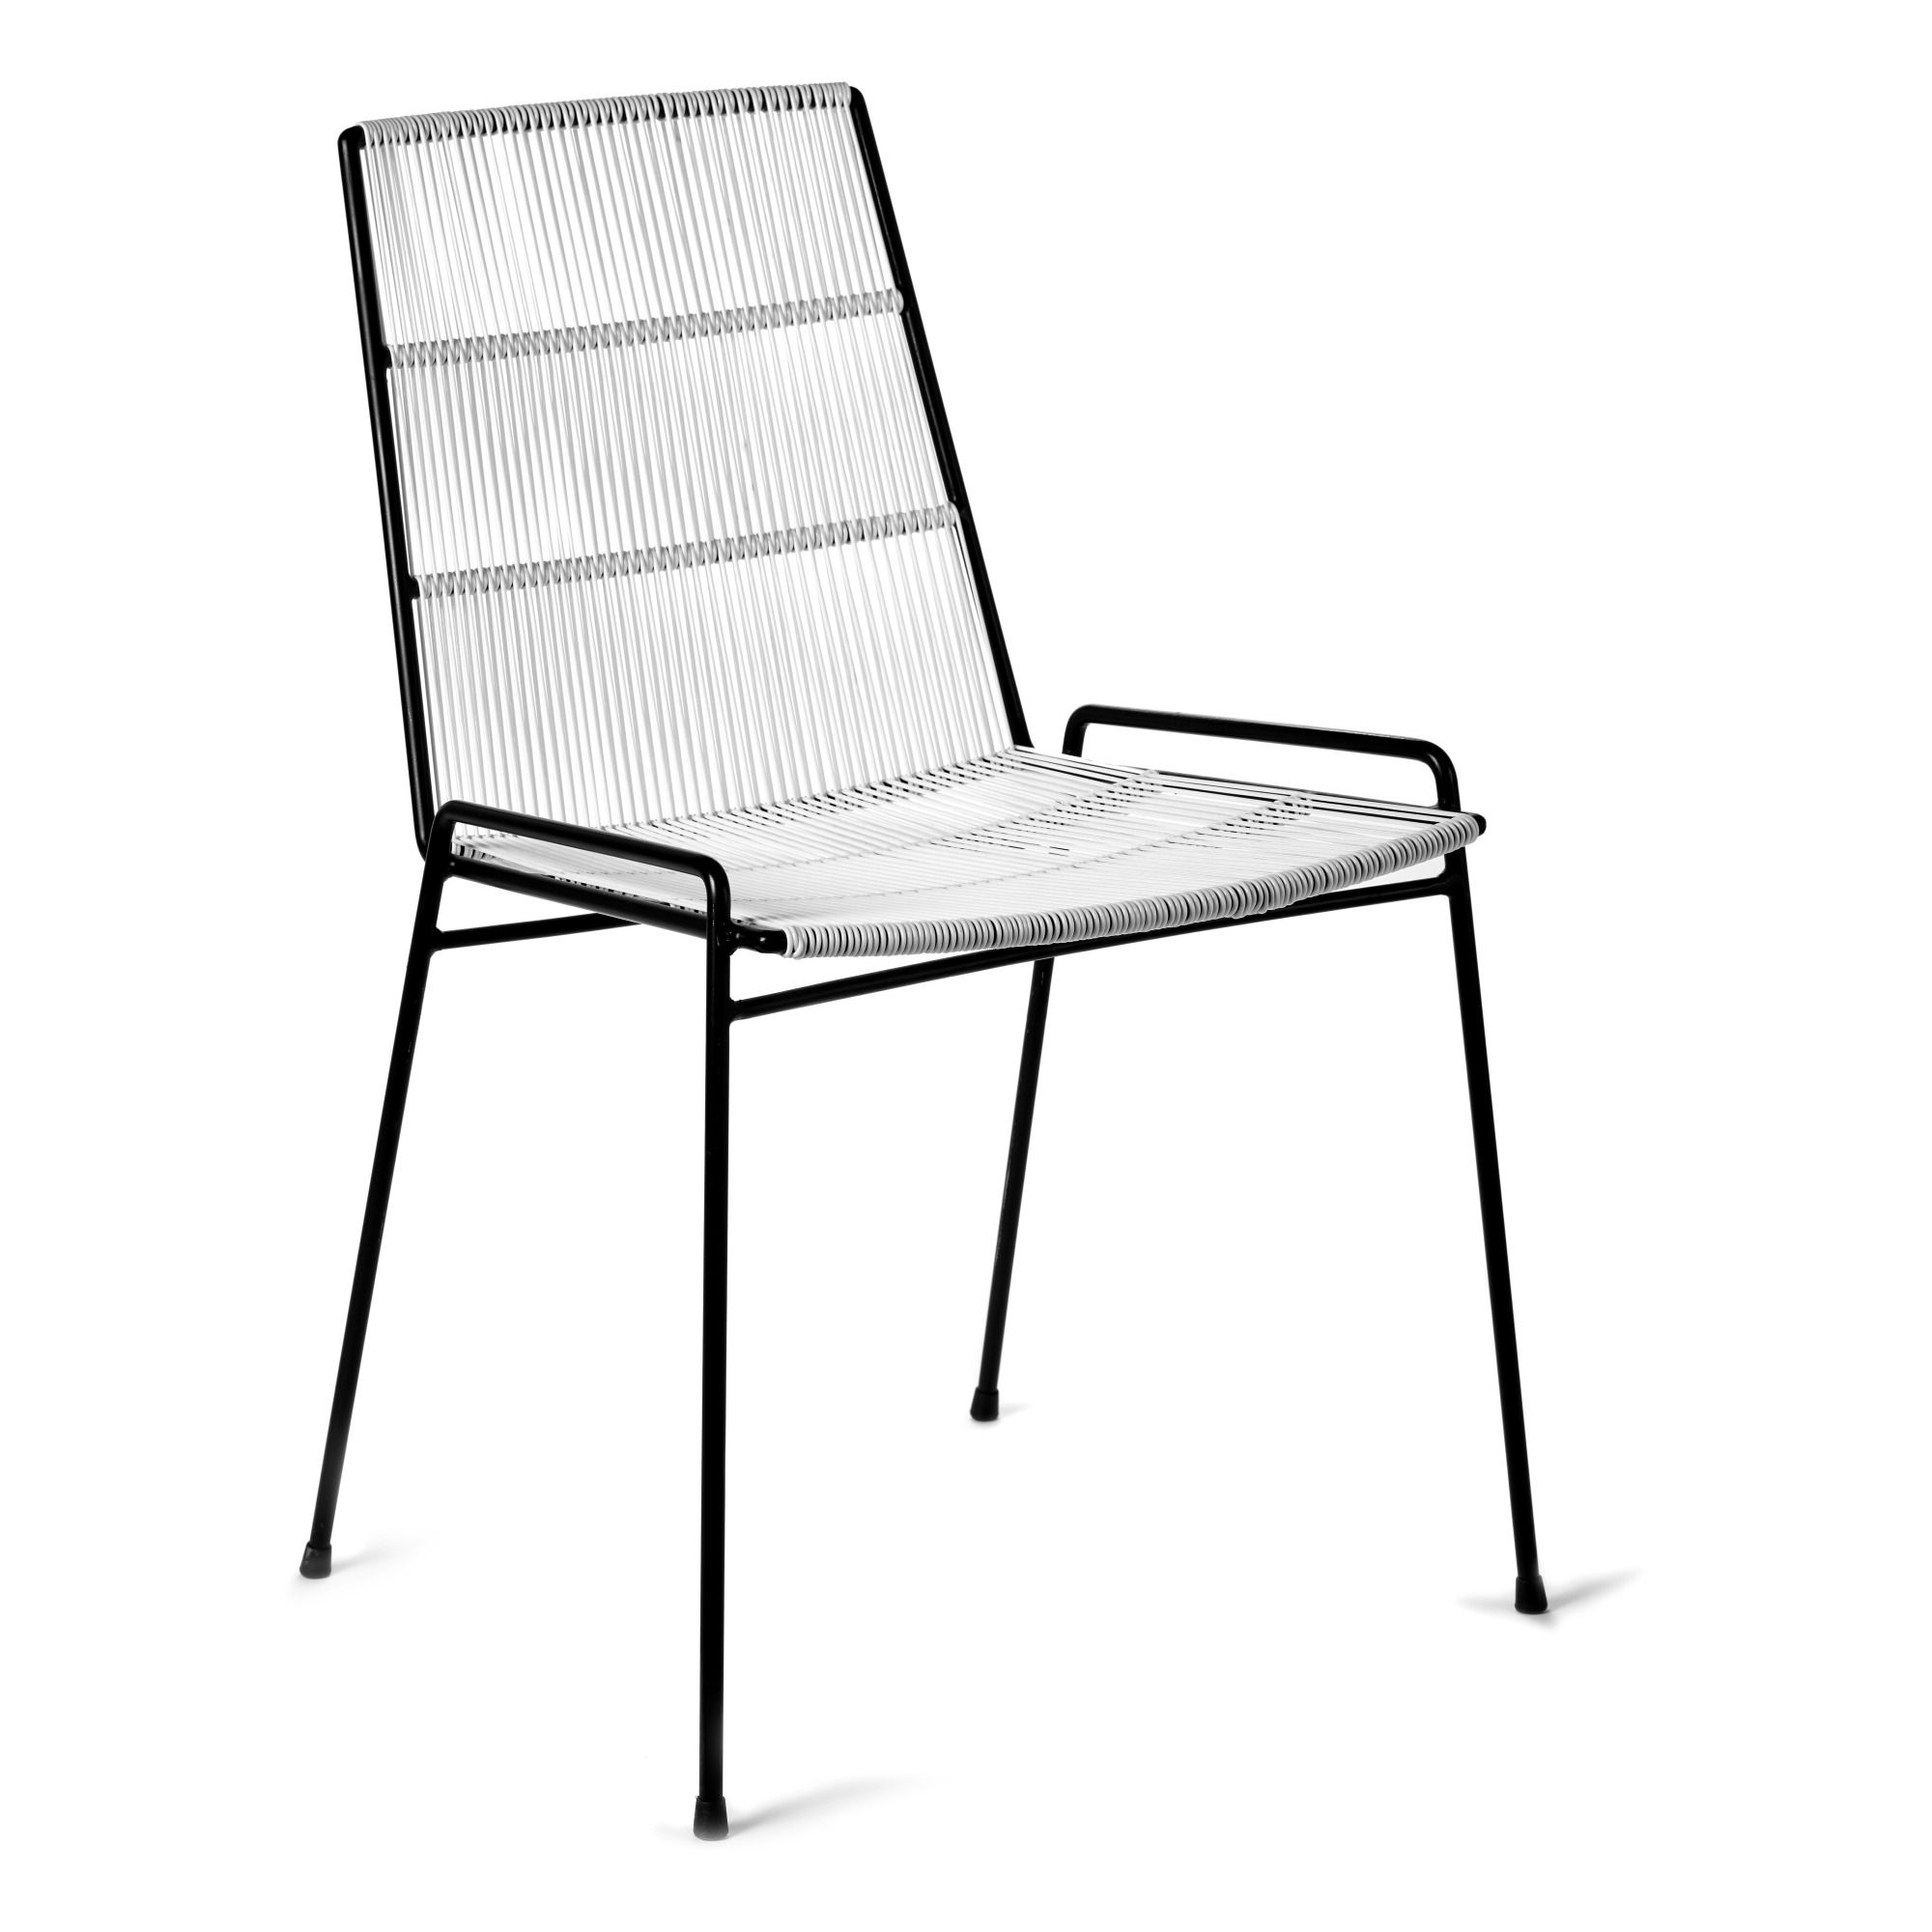 Serax - Chaise abaco en métal - Blanc